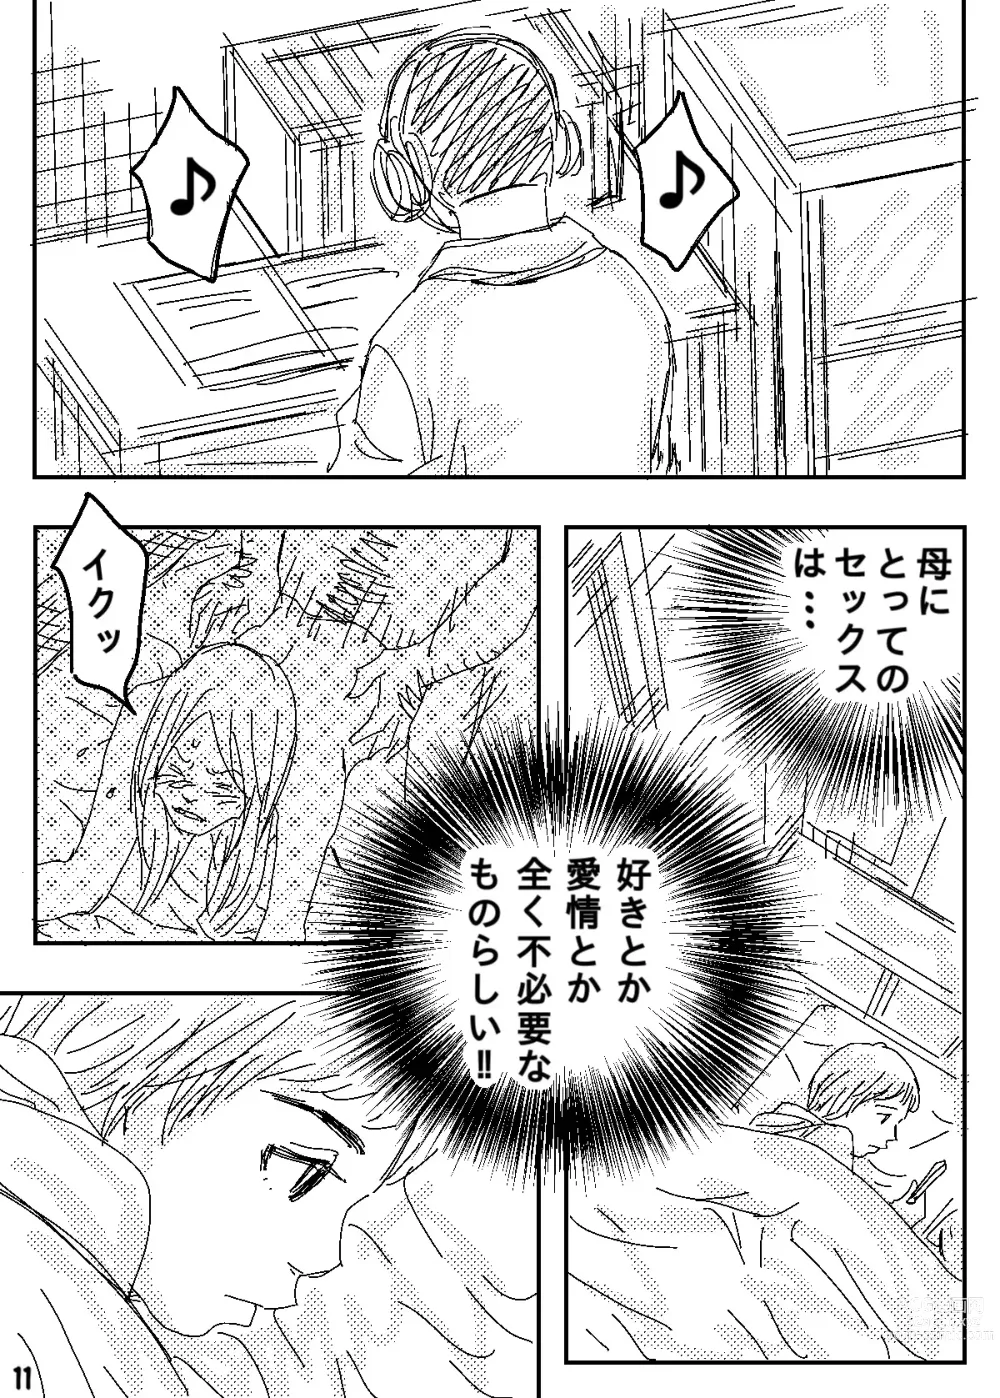 Page 11 of doujinshi Gesu no Kiwami Kazoku